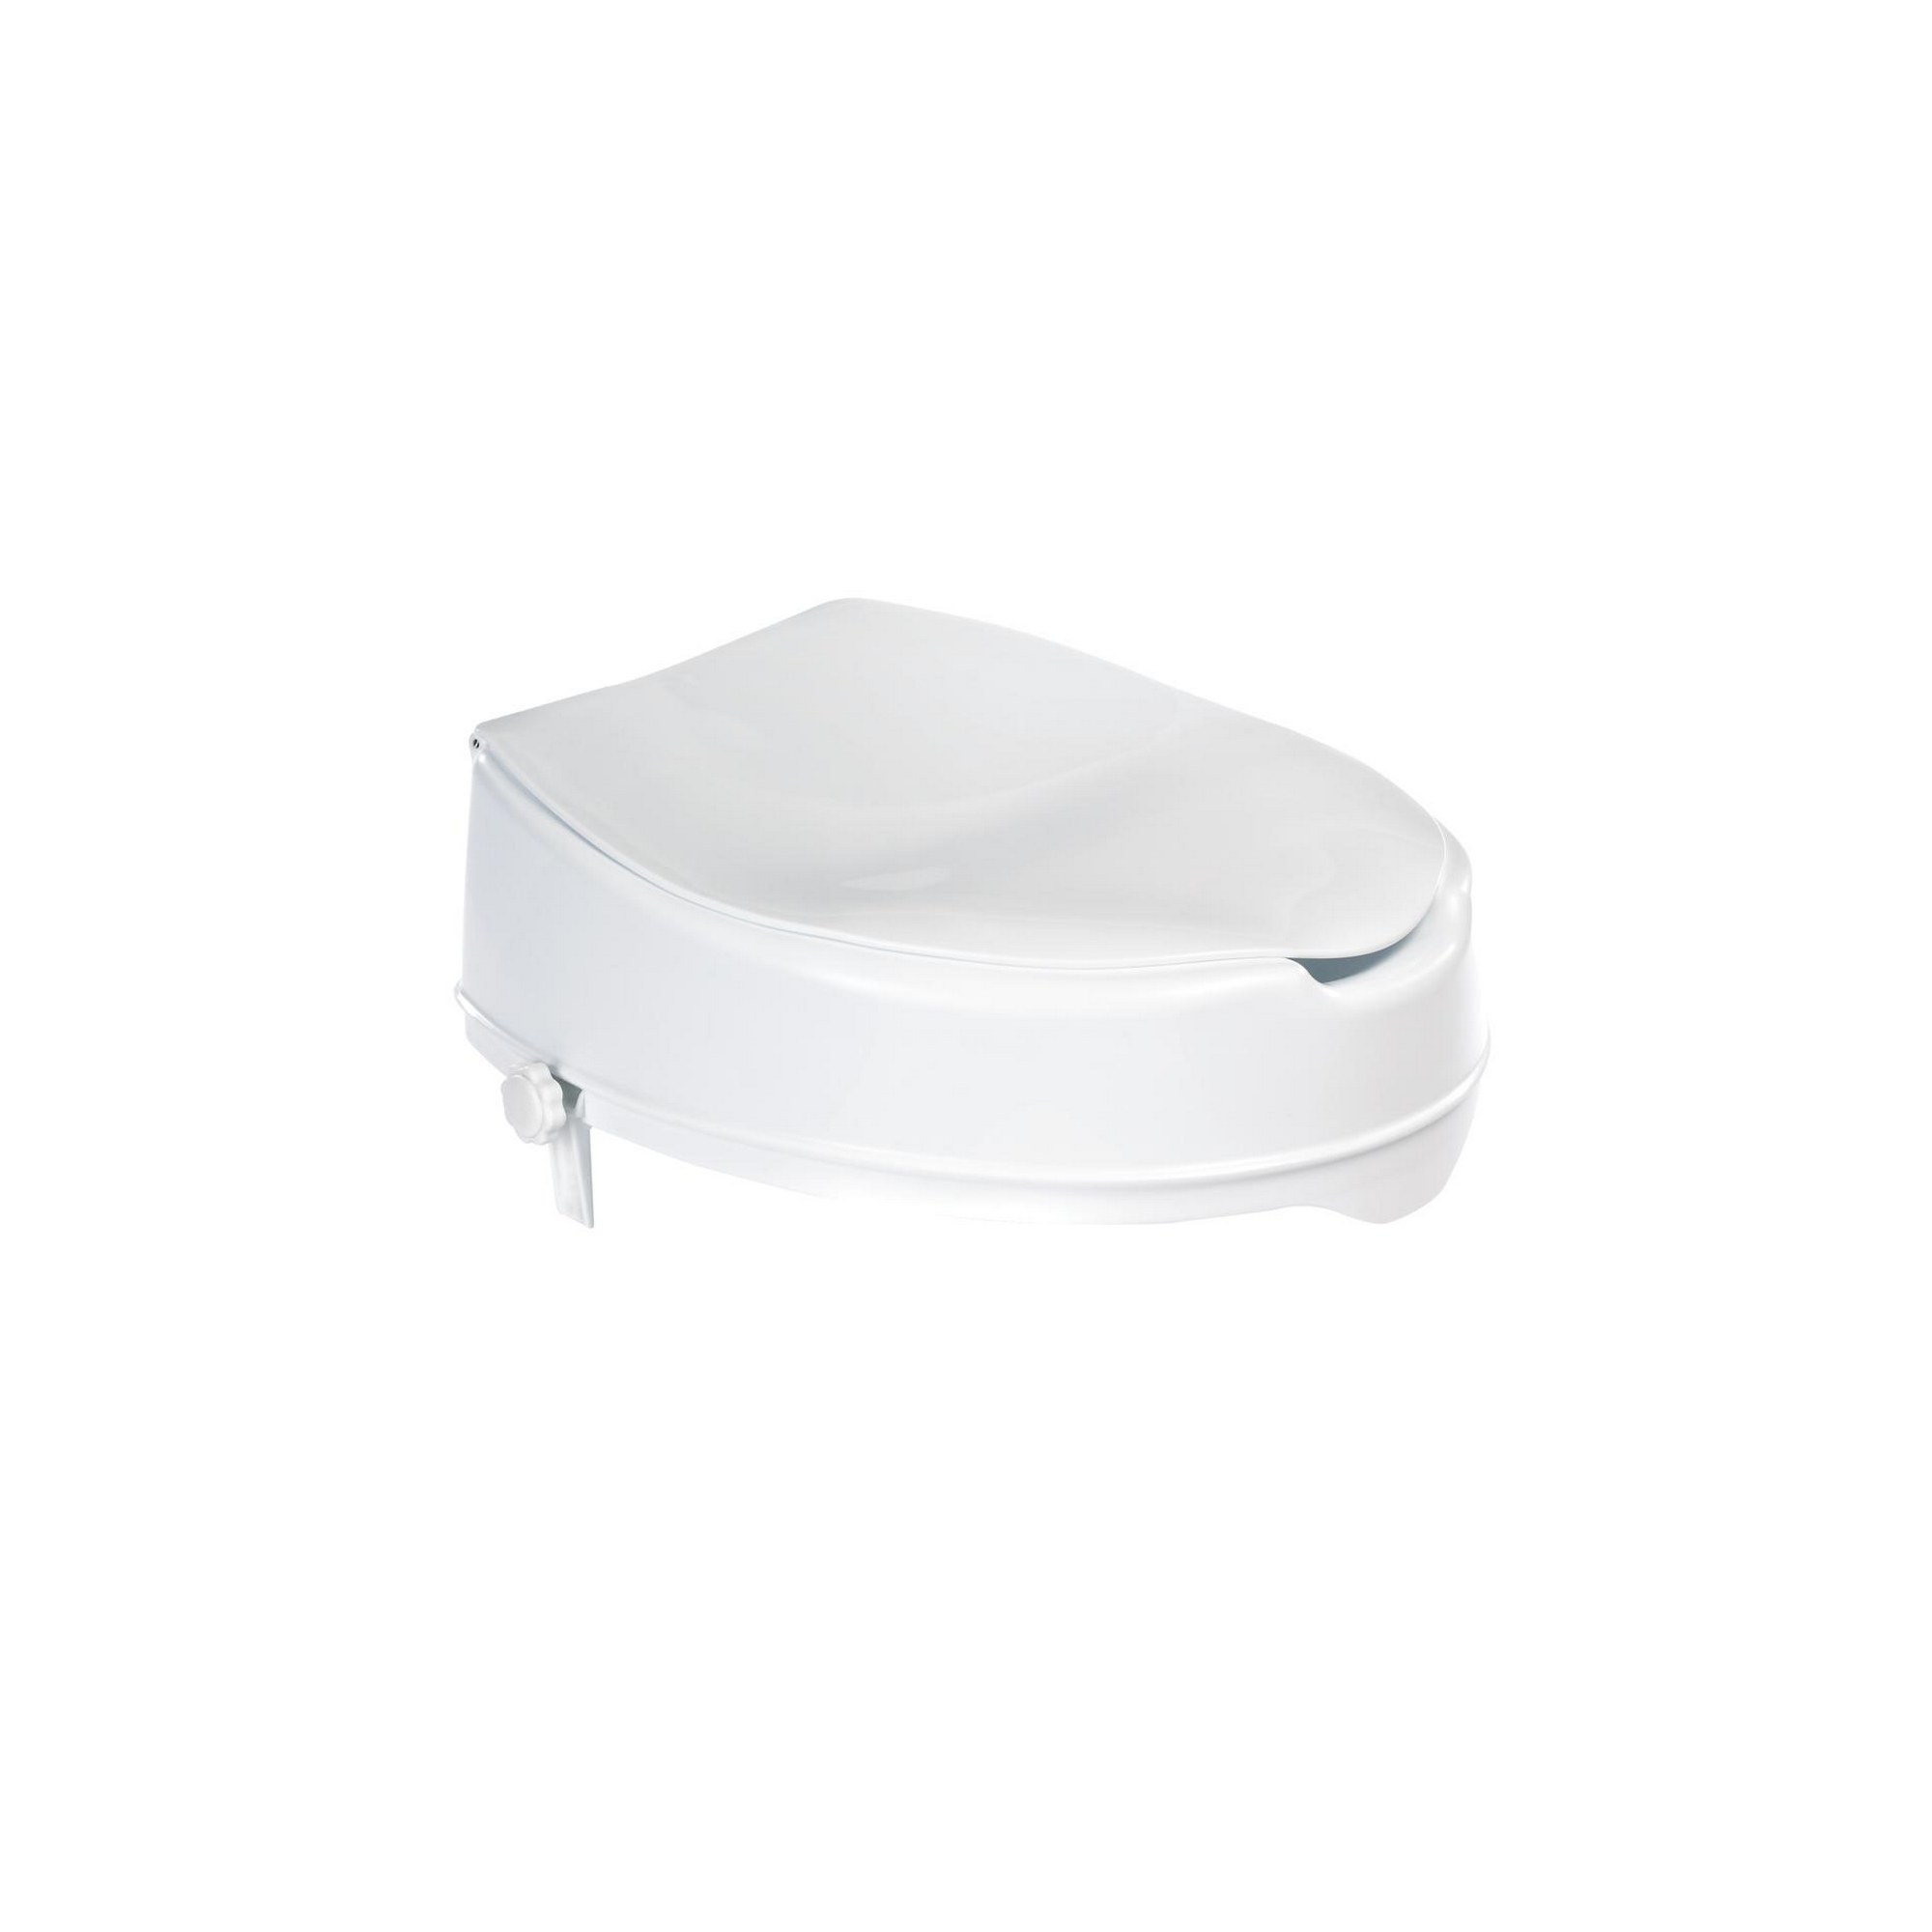 WC-Sitzerhöhung 'Comfort' weiß mit Deckel, bis 150 kg + product picture